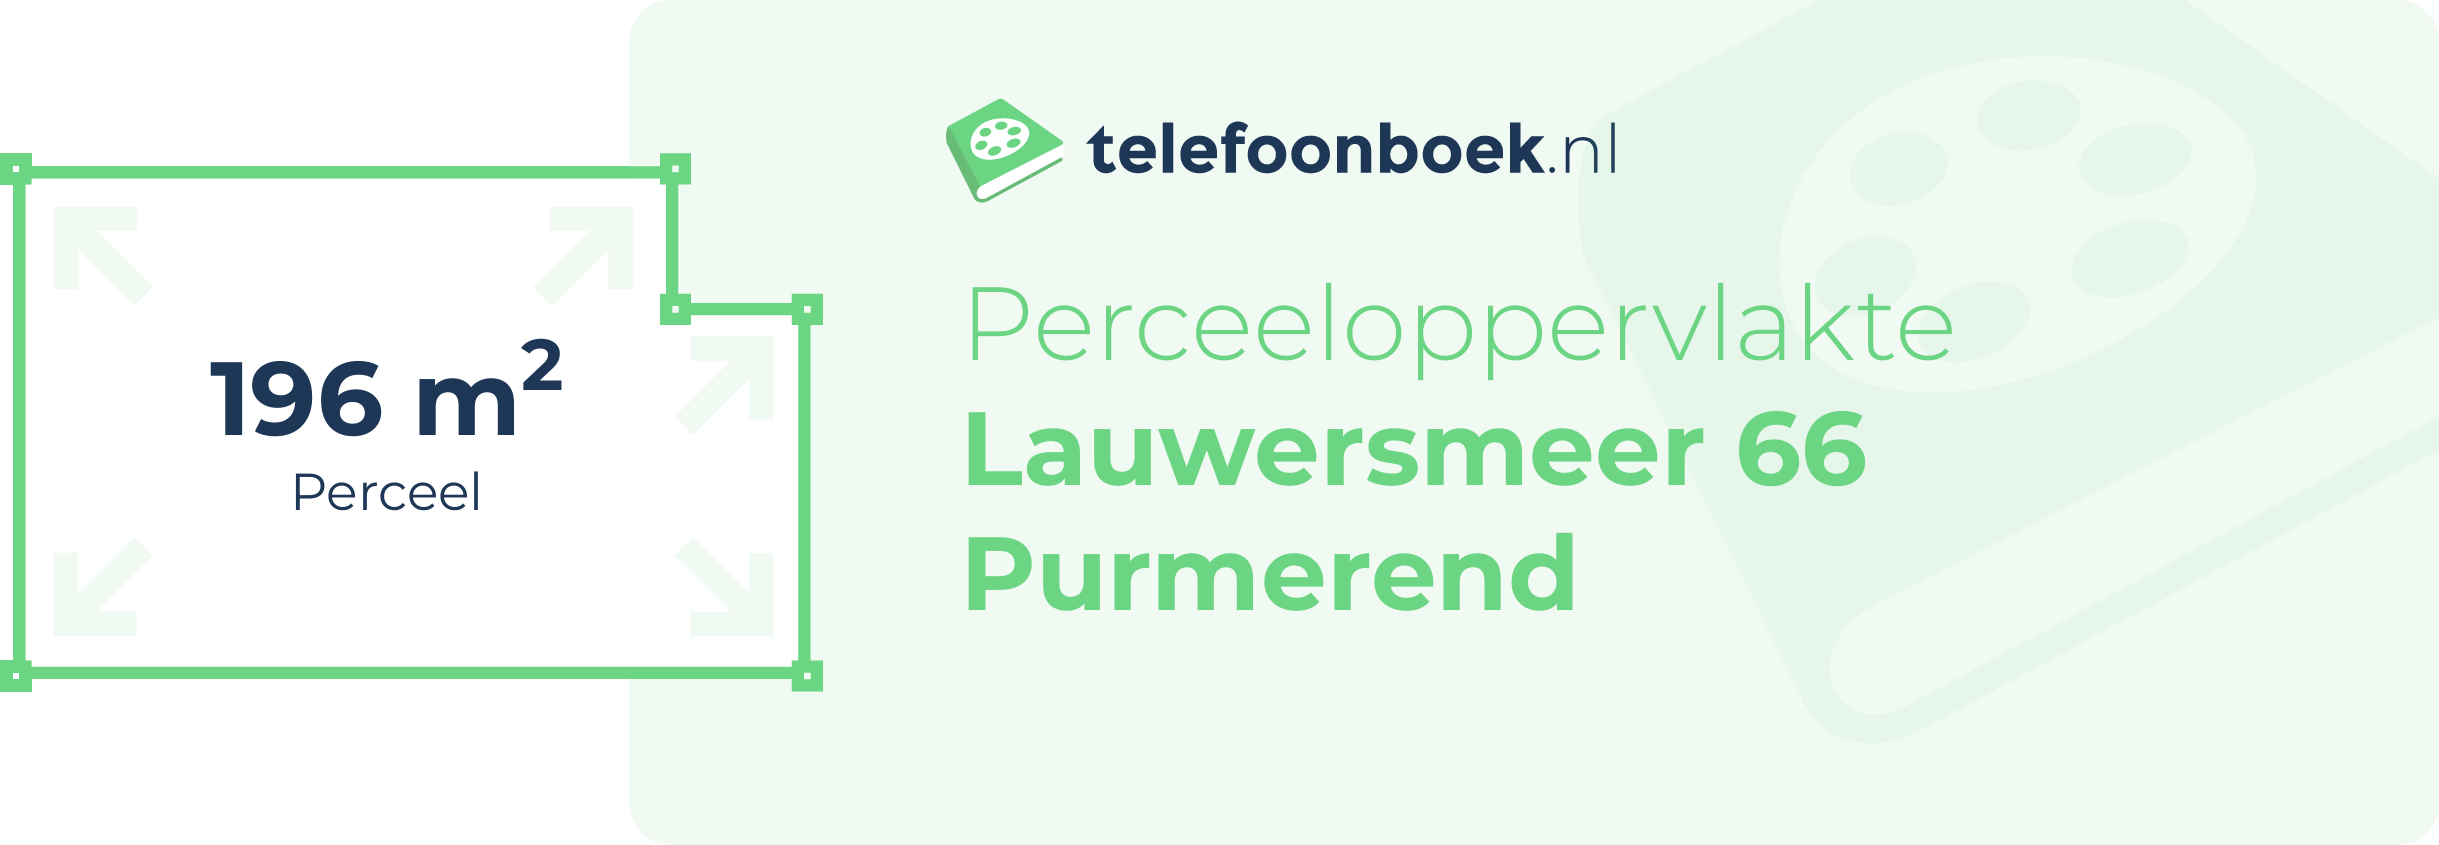 Perceeloppervlakte Lauwersmeer 66 Purmerend